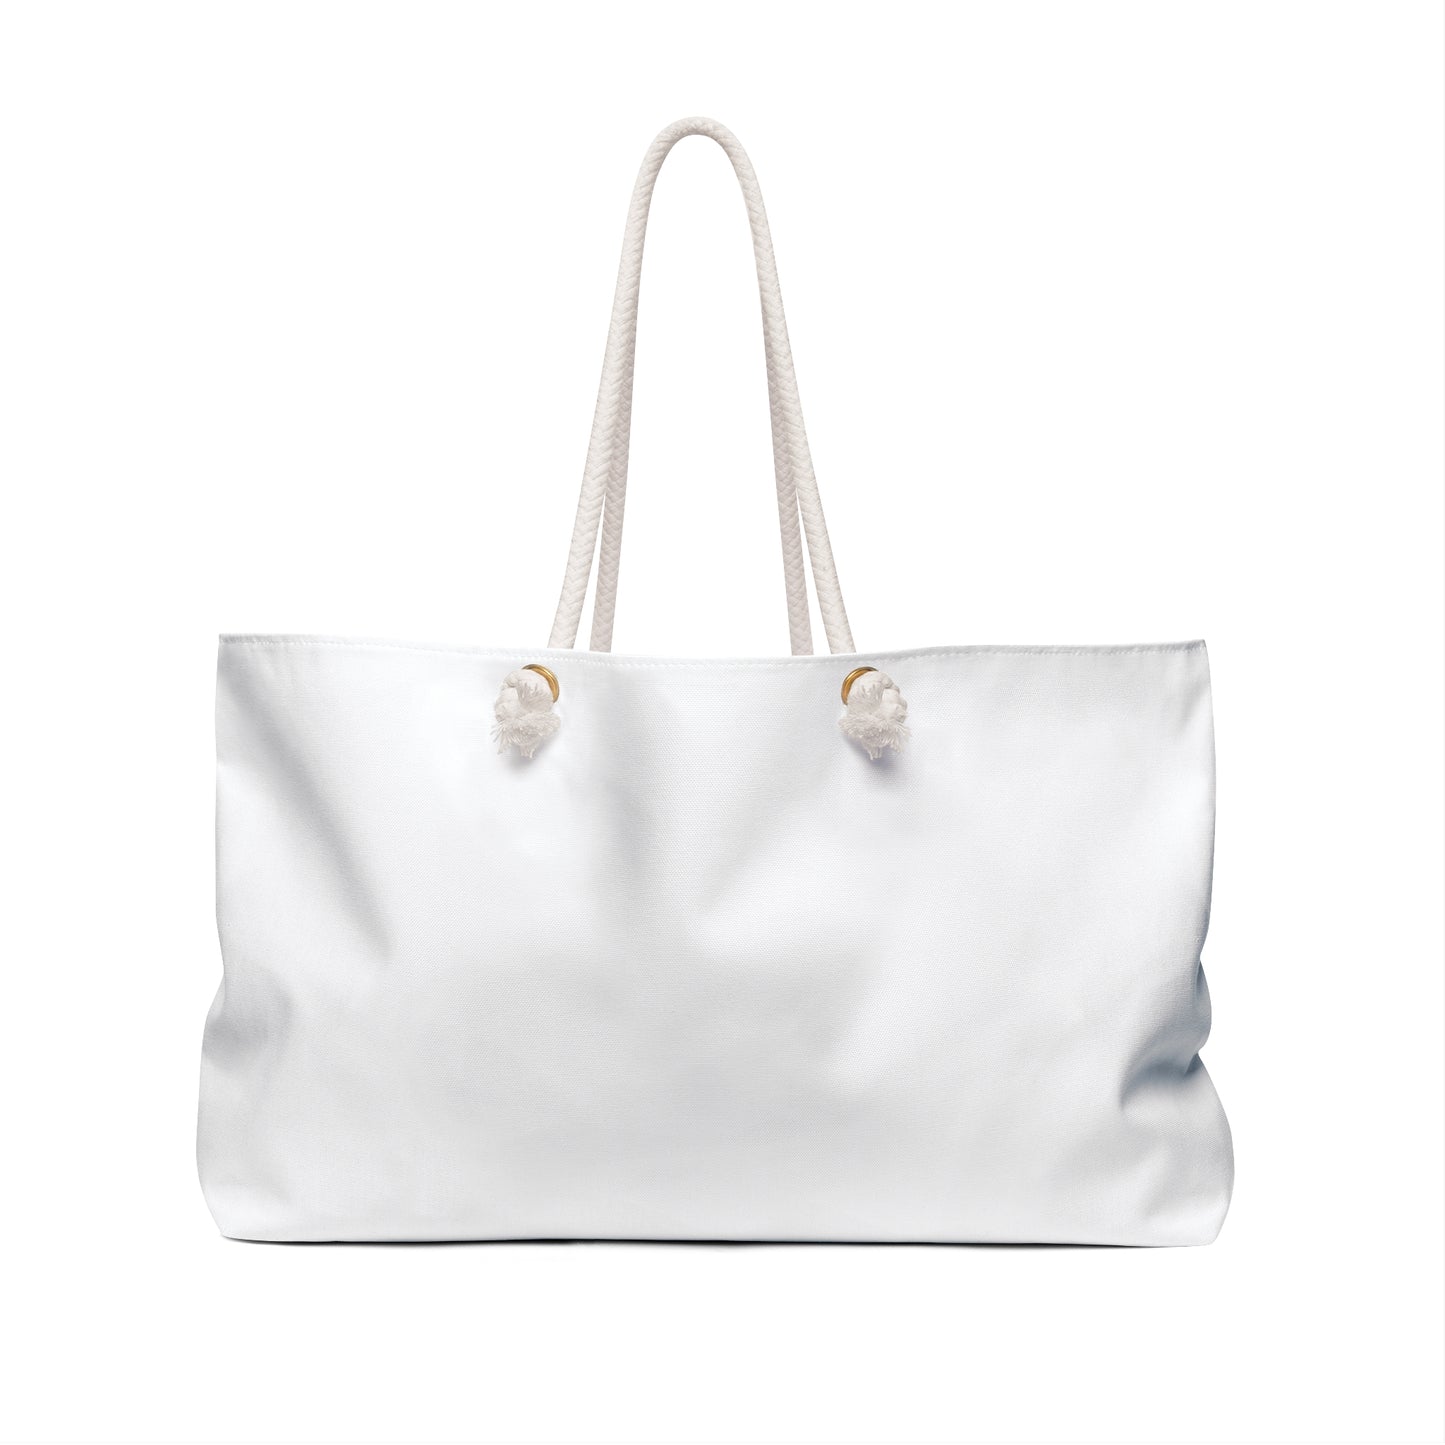 Kali Chin | Weekender Bag | White